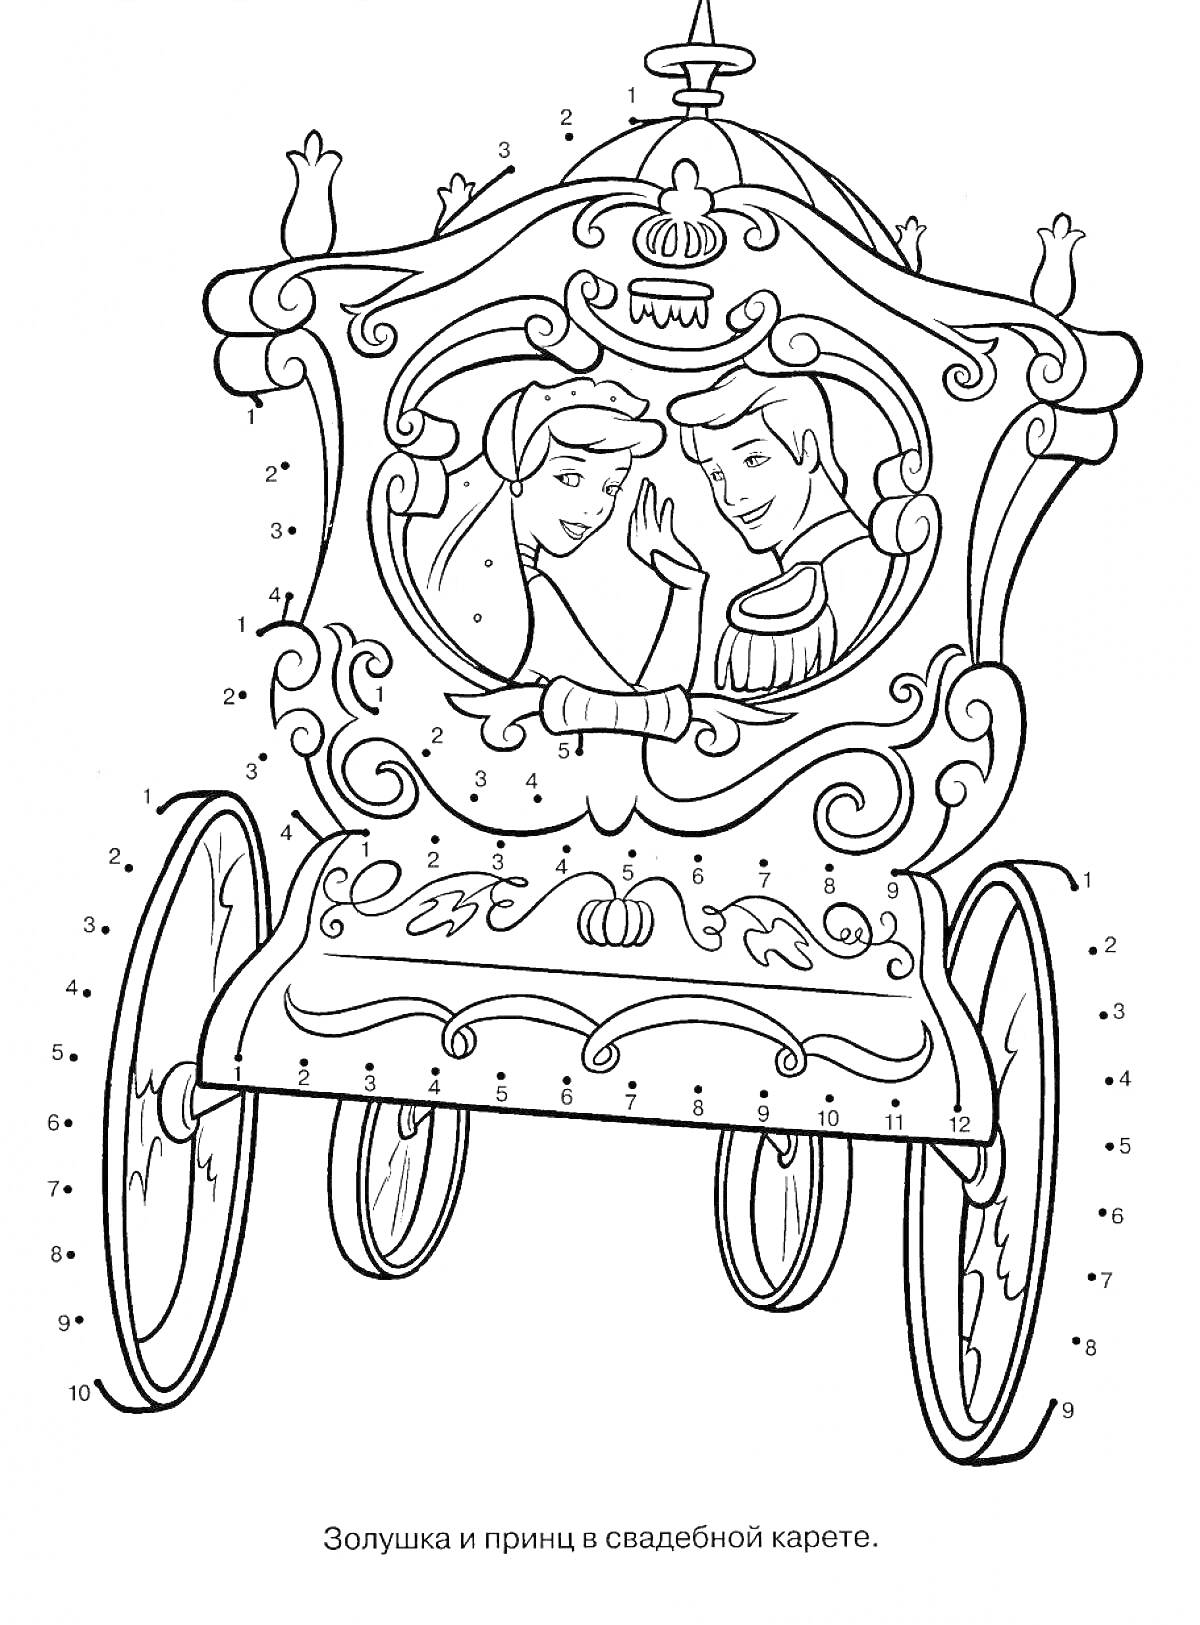 Раскраска Принцесса и принц в свадебной карете из сказки, карета с четырьмя колесами, украшенная королевскими узорами.